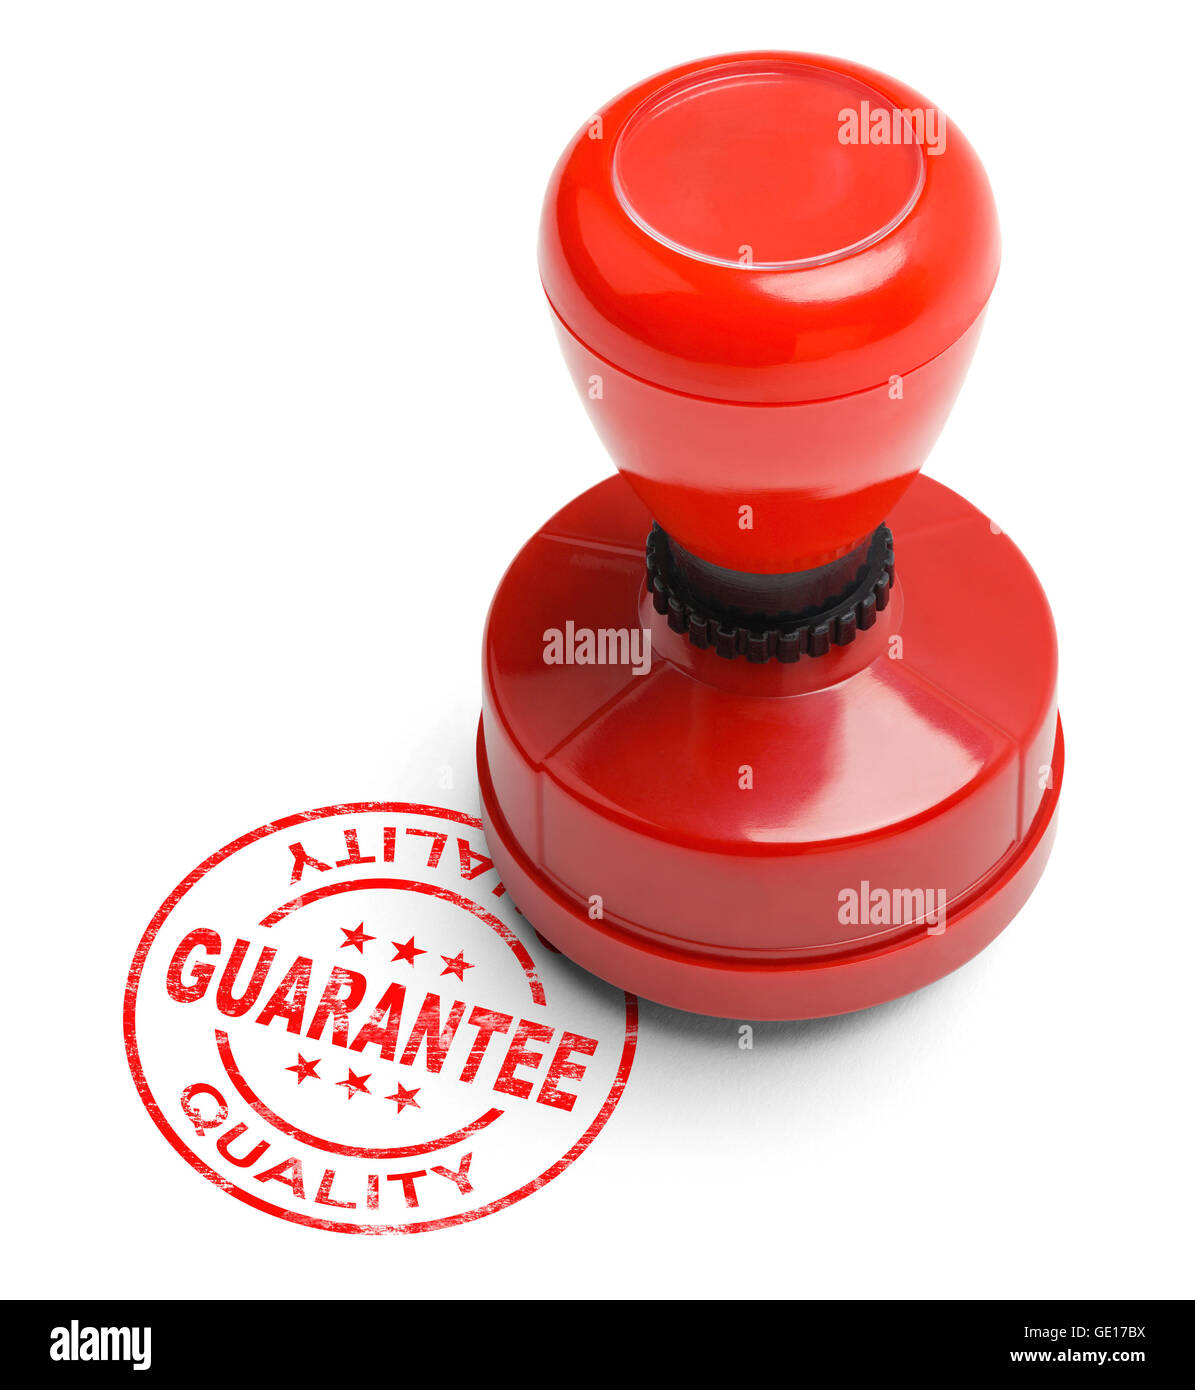 Rote Qualität Garantie Stamper, Isolated on White Background. Stockfoto